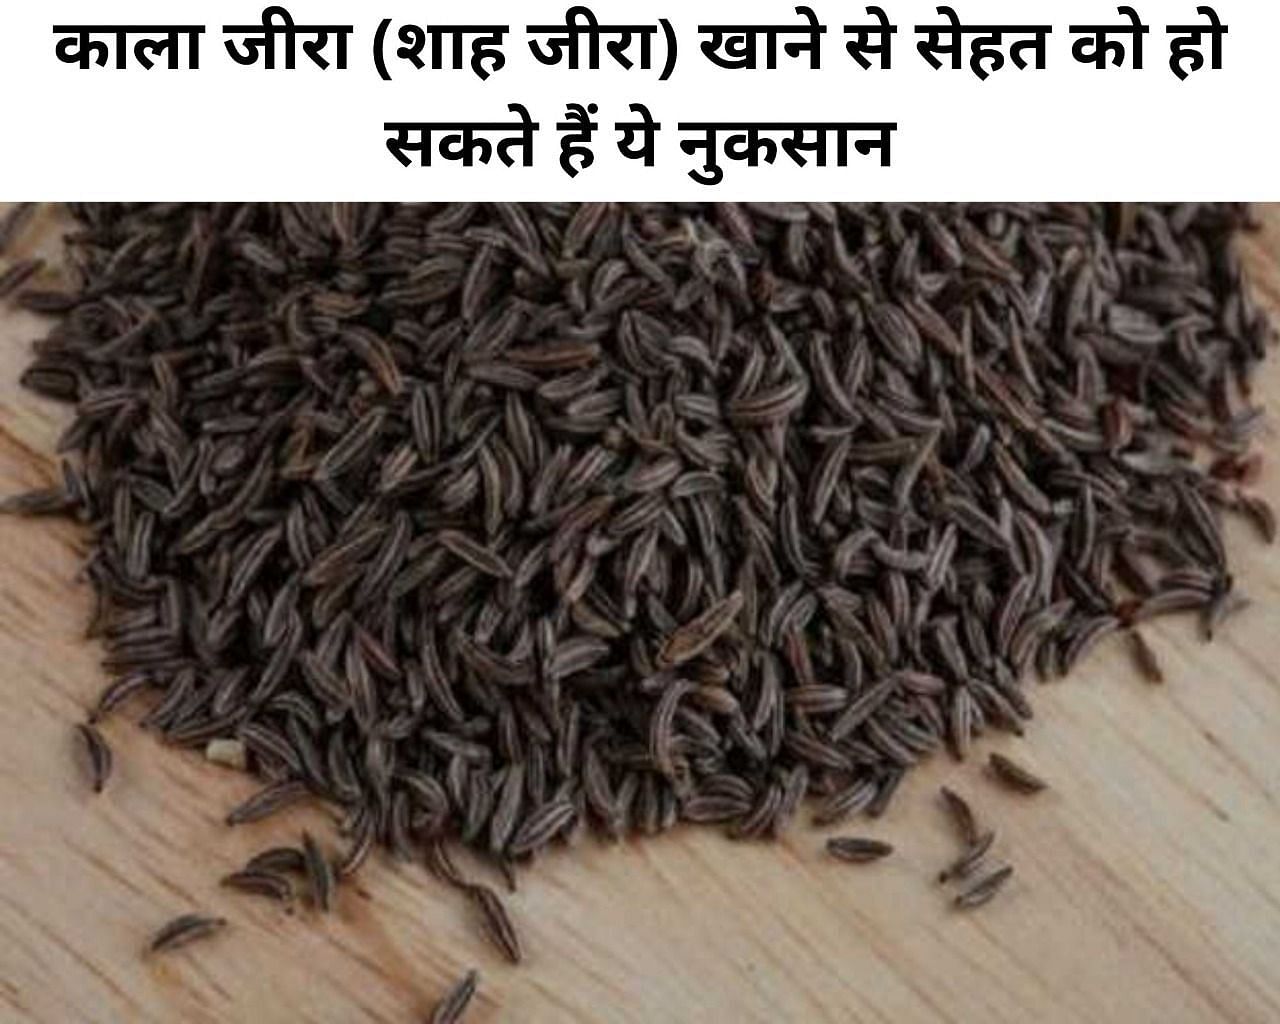 काला जीरा (शाह जीरा) खाने से सेहत को हो सकते हैं ये नुकसान (फोटो - sportskeeda hindi)